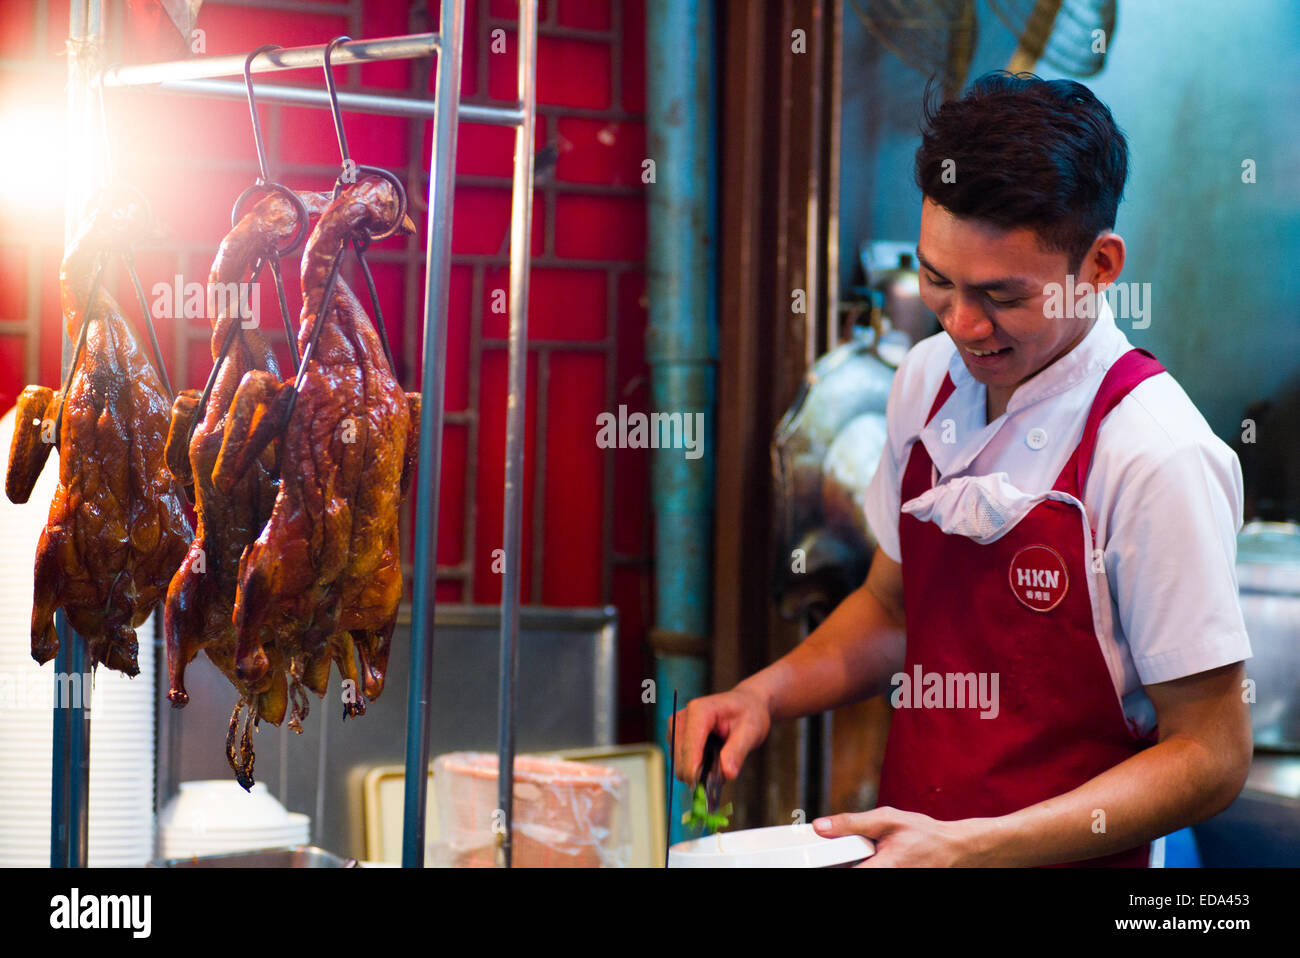 Peking Duck, Hong Kong Noodles shop, Chinatown, Bangkok, Thailand. Stock Photo